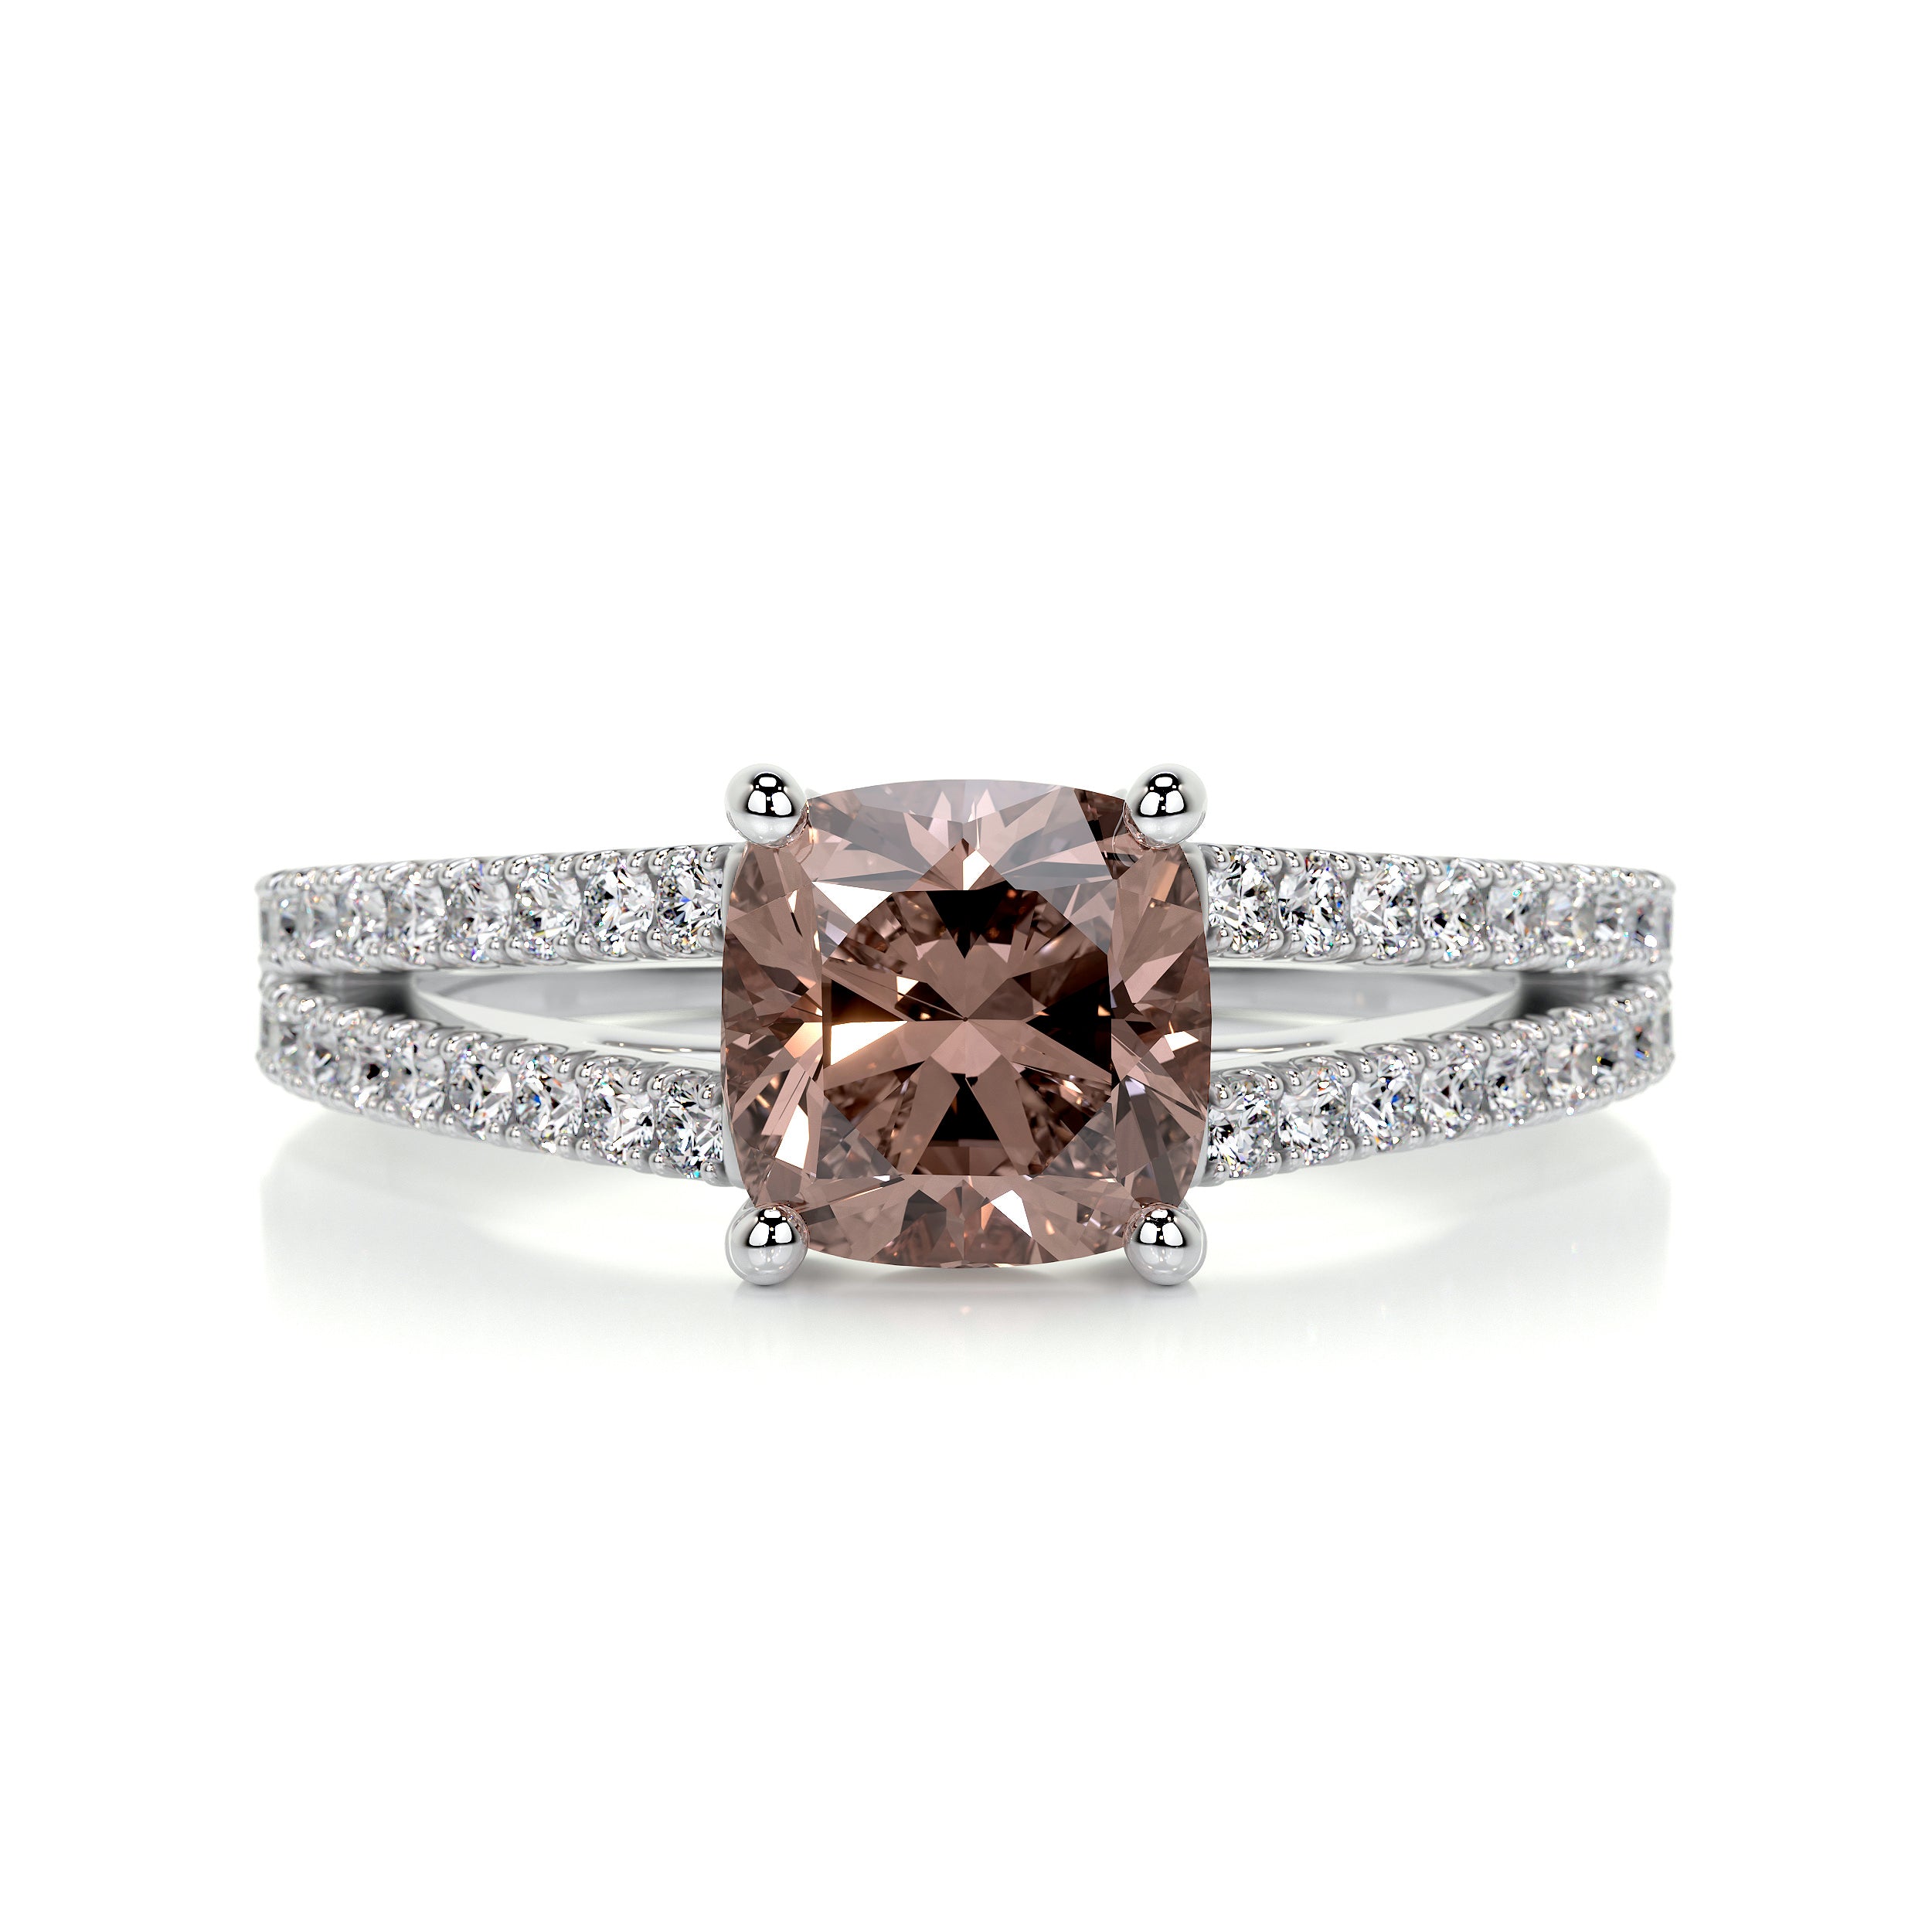 Sadie Gemstone & Diamonds Ring   (2 Carat) -14K White Gold